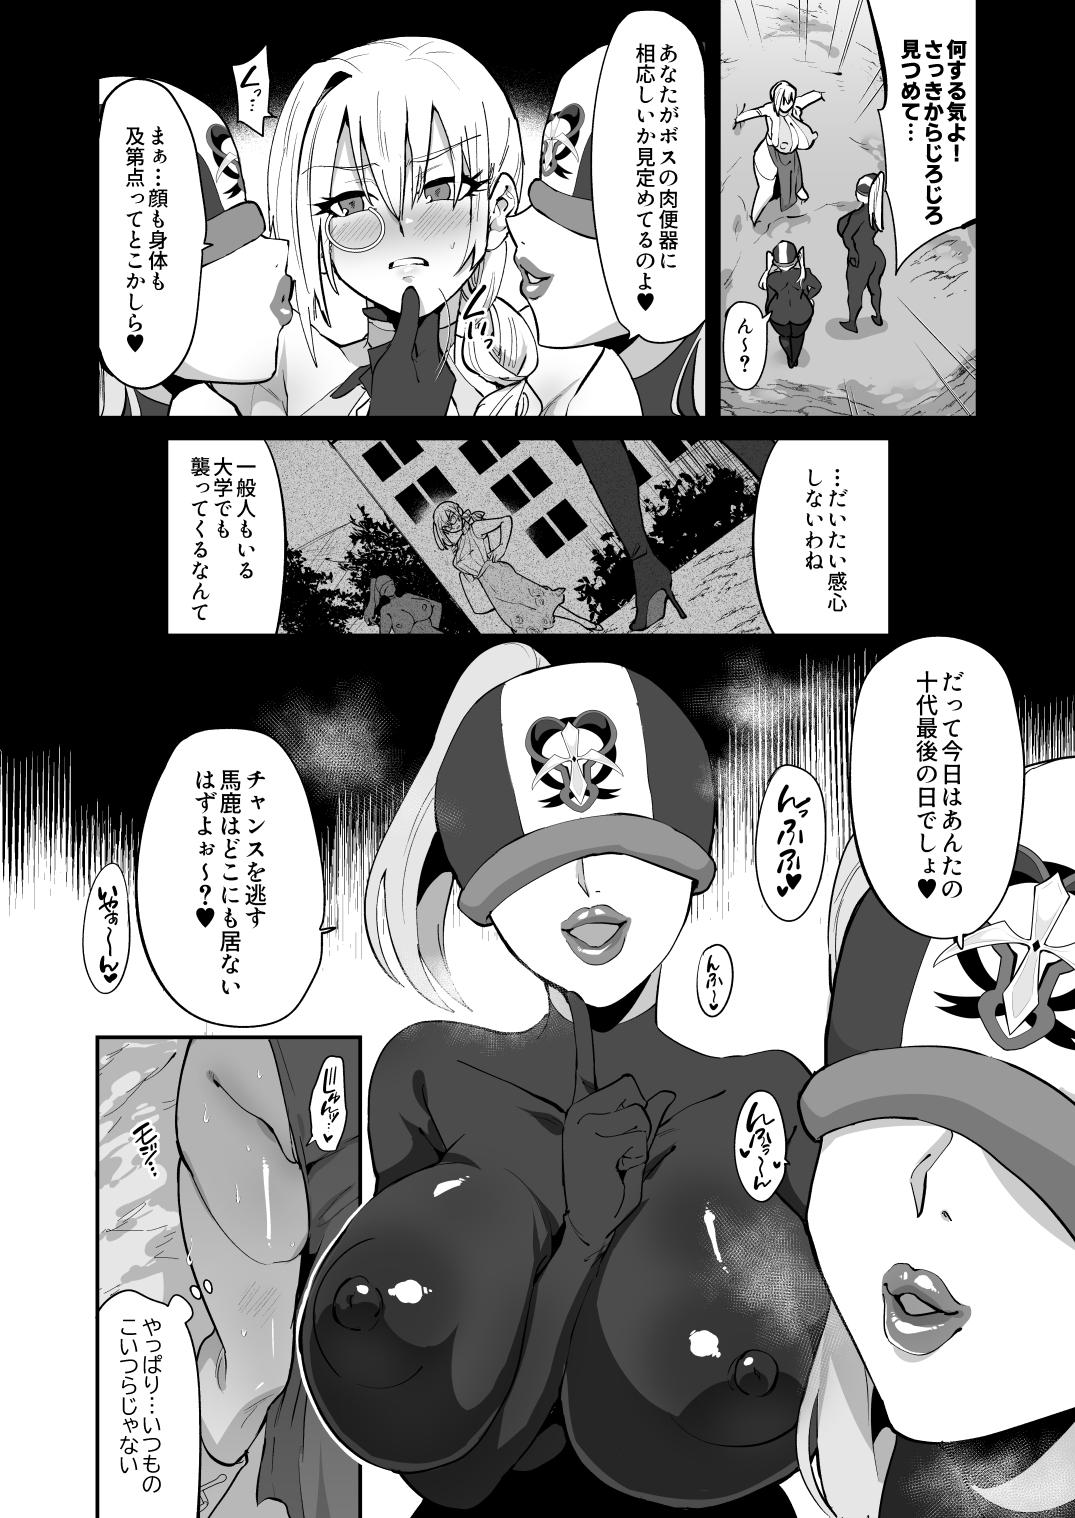 Magical Girl vs Futanari Combatant Sisters 3